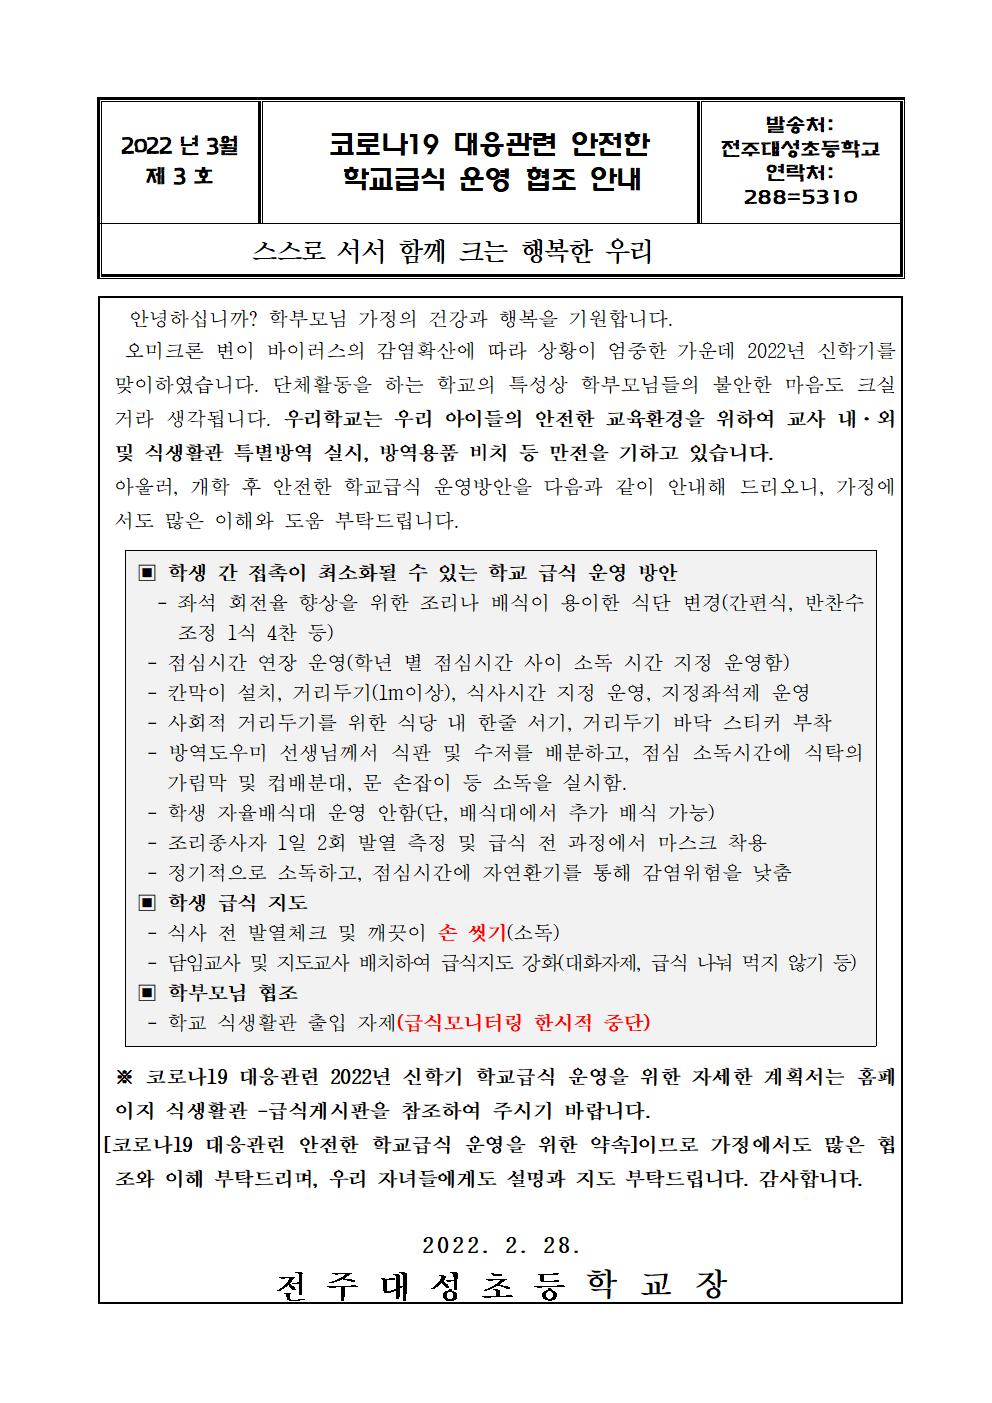 제3호 - 코로나19 대응관련신학기학교급식운영가정통신문001